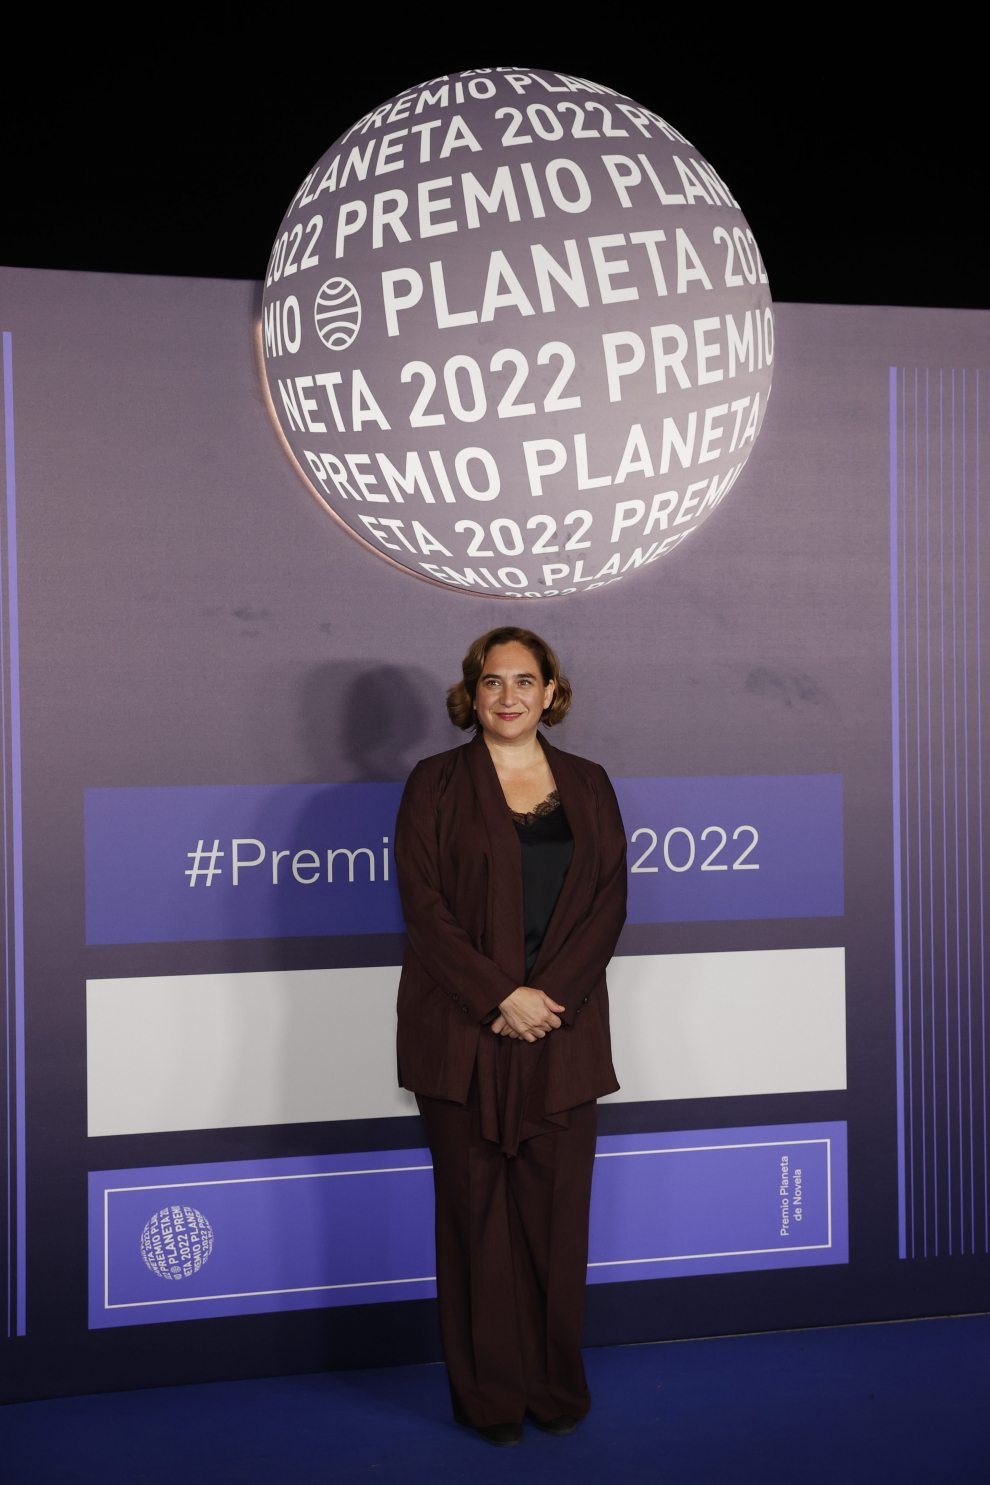 Caras conocidas en la gala del Premio Planeta 2022